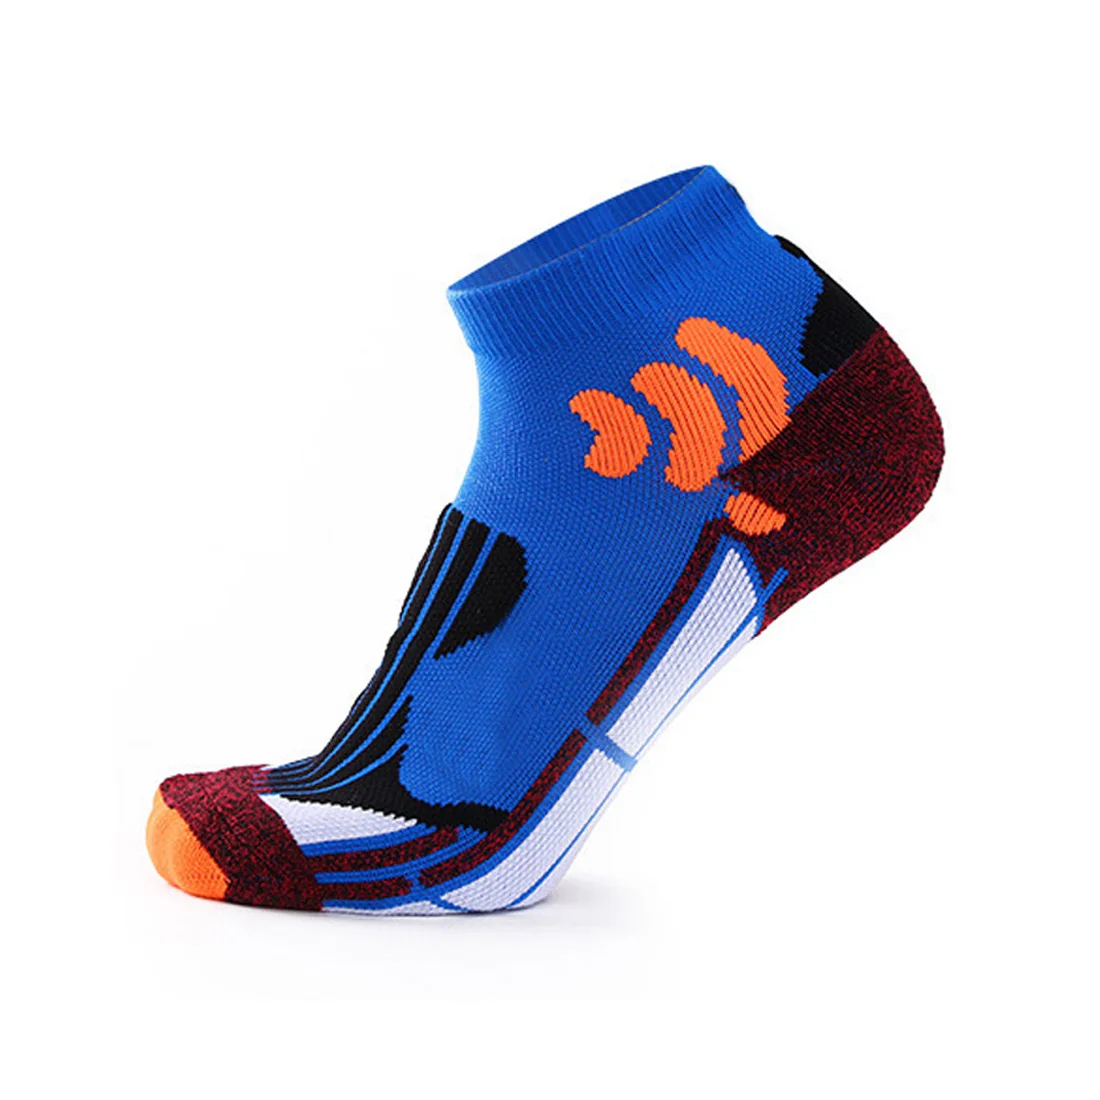 Хлопковые Компрессионные носки для бега, спортивные носки для мужчин и женщин, плотные спортивные дышащие носки для занятий спортом на открытом воздухе, фитнесом, soc - Цвет: Royal blue